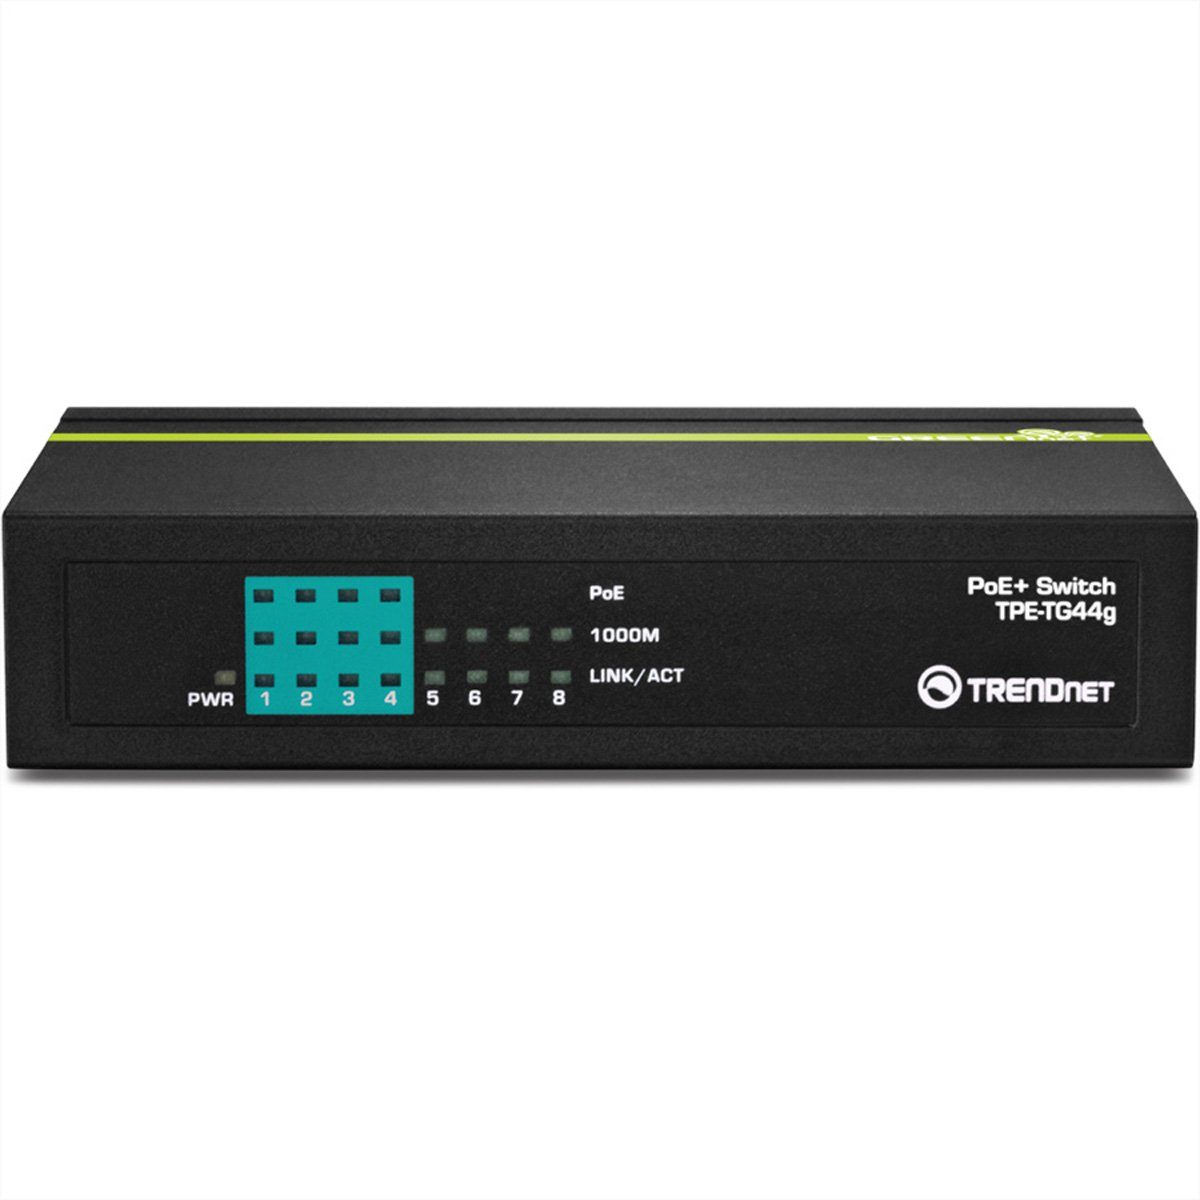 Trendnet TPE-TG44g 8-Port PoE 4 Switch Gigabit GREENnet Netzwerk-Switch PoE, Non-PoE 4